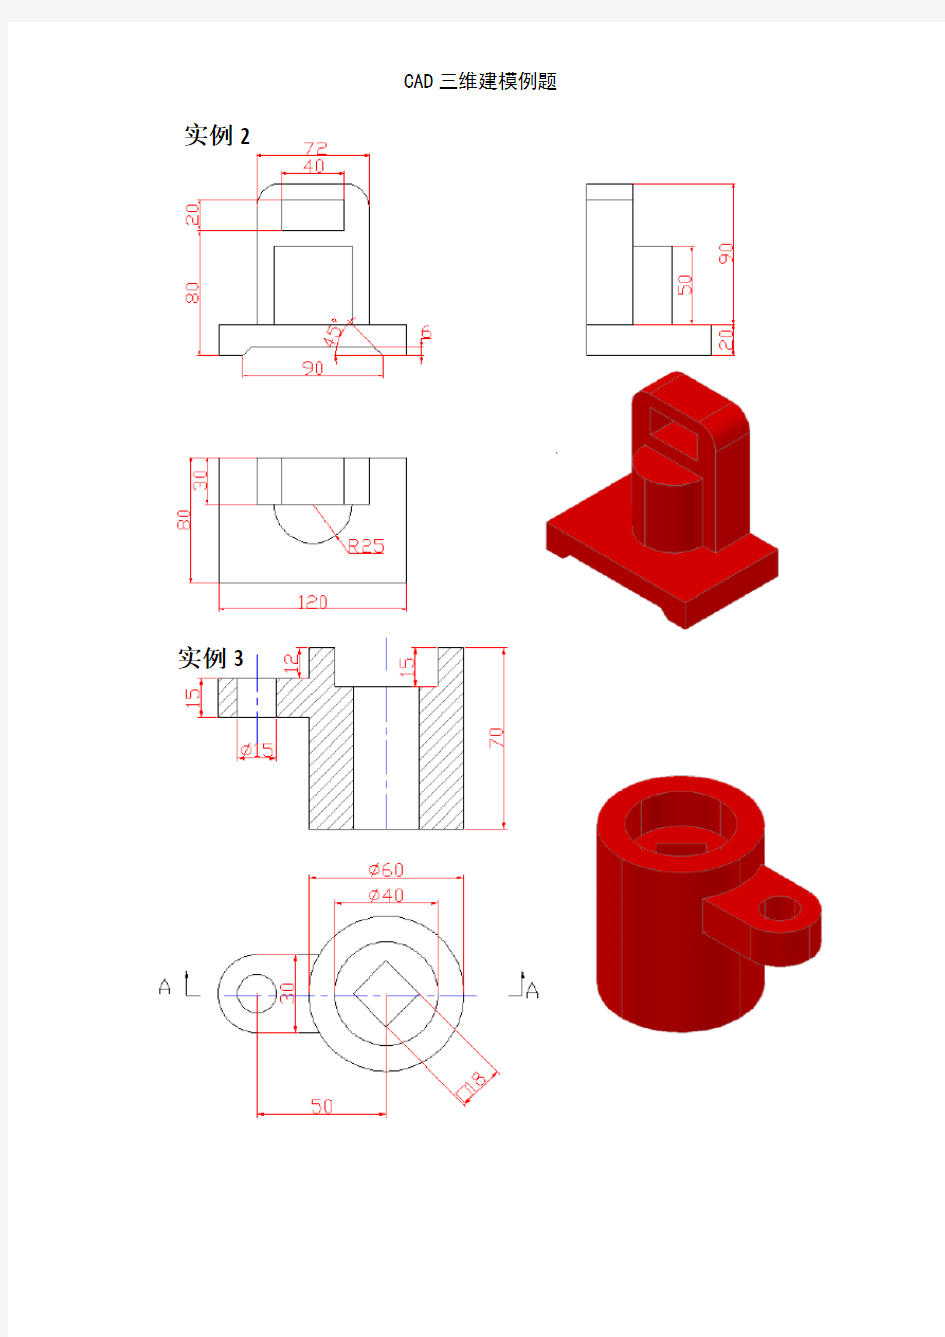 CAD三维建模例题